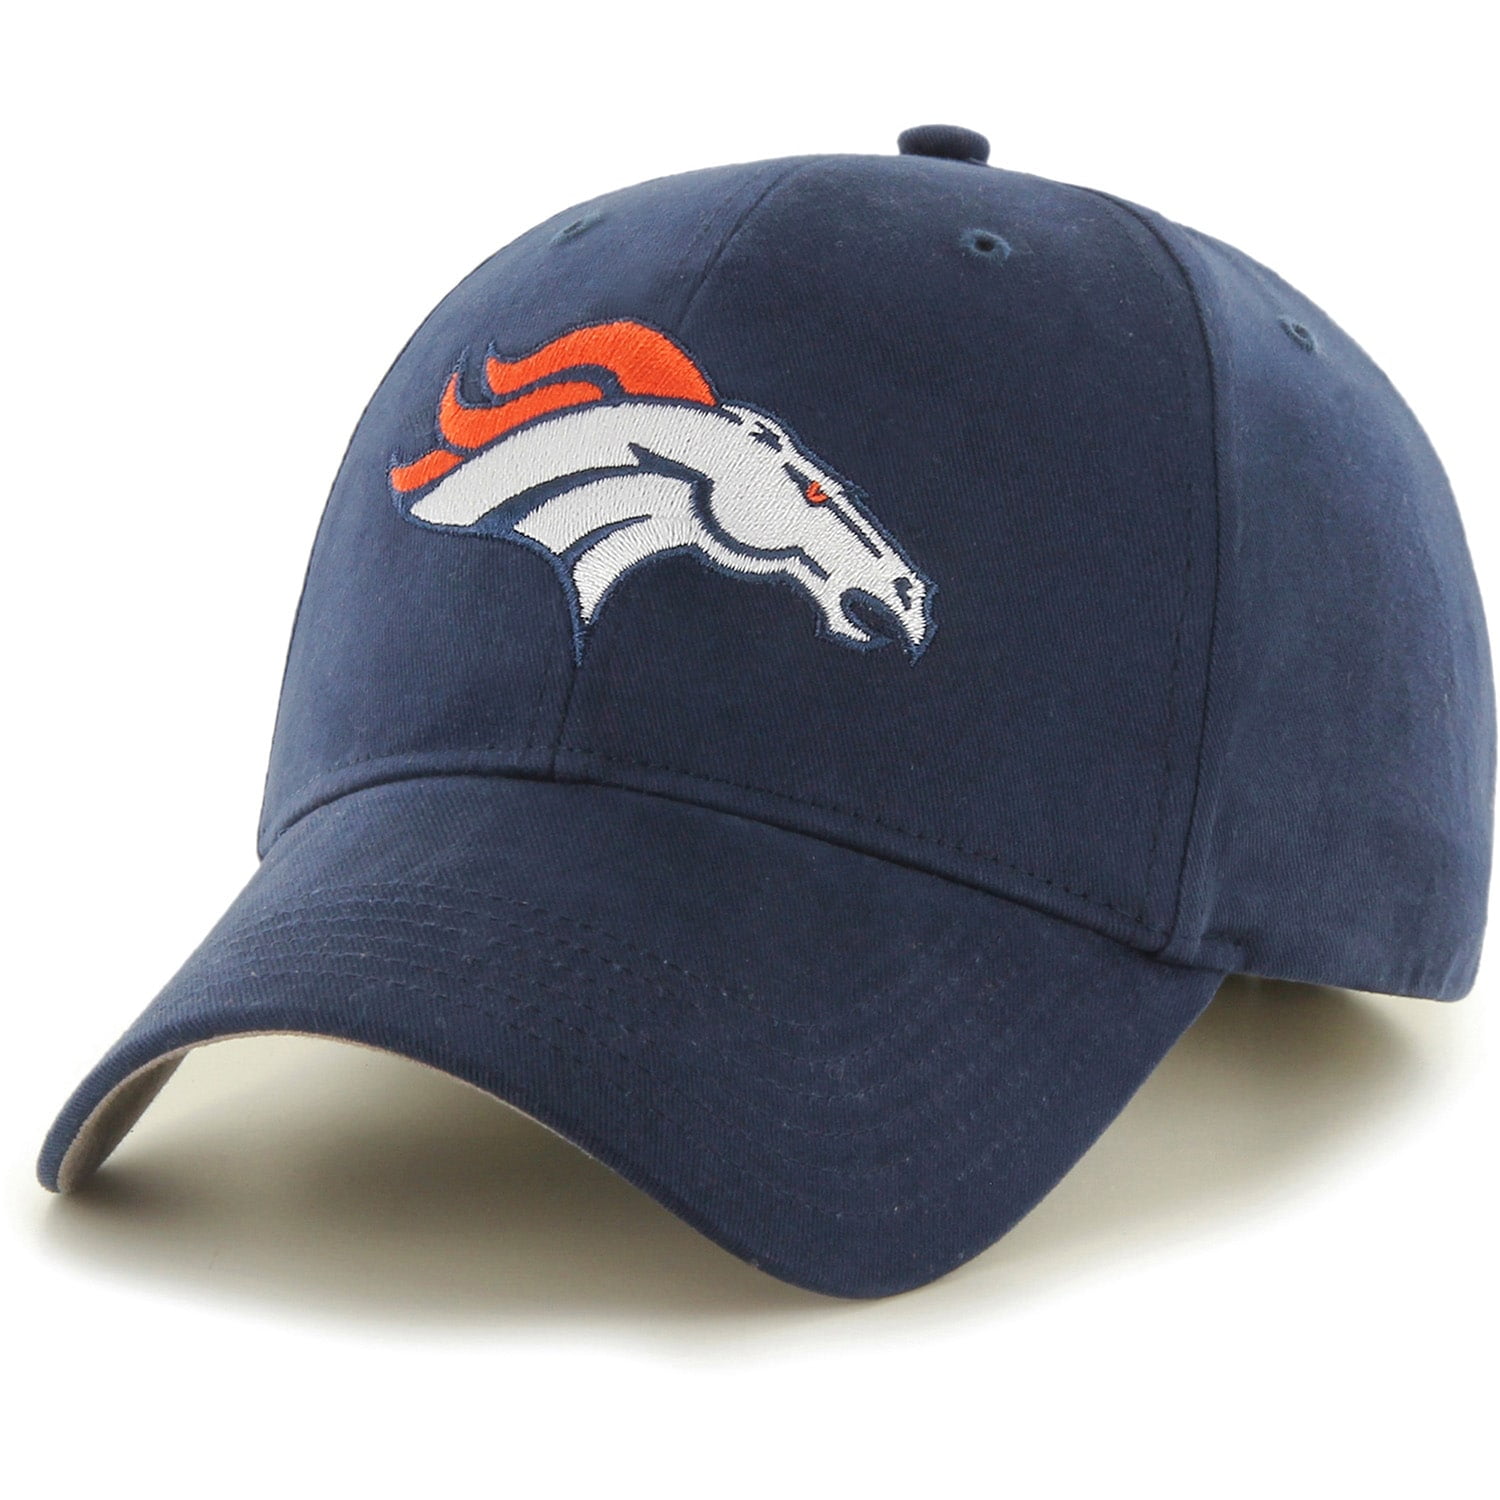 Denver Broncos Hats - Walmart.com